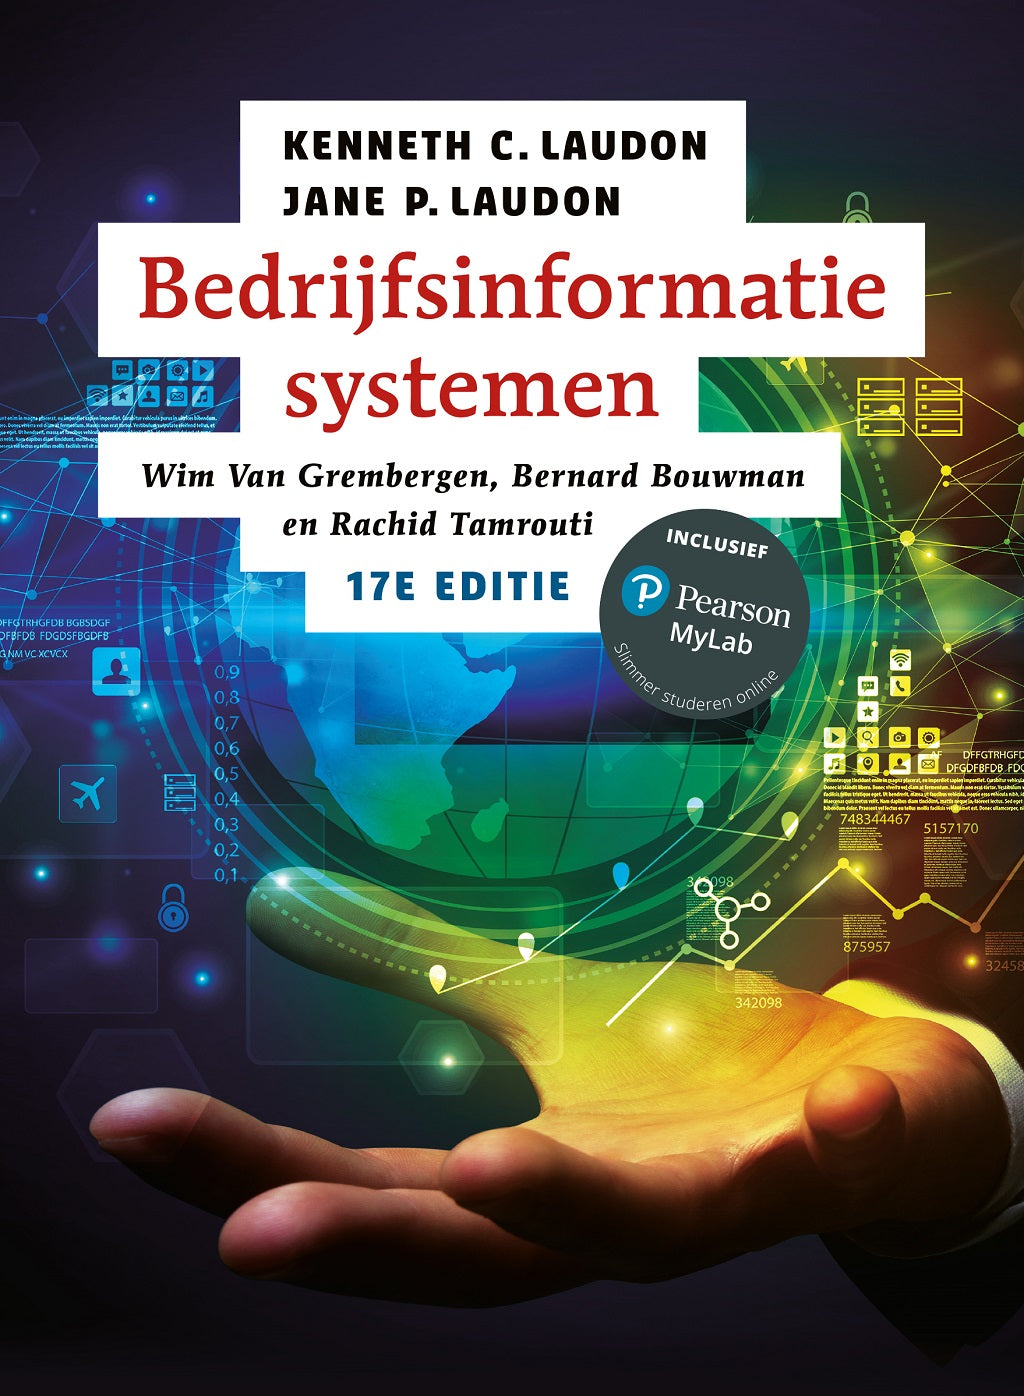 Bedrijfsinformatiesystemen, 17e editie (Digitaal)